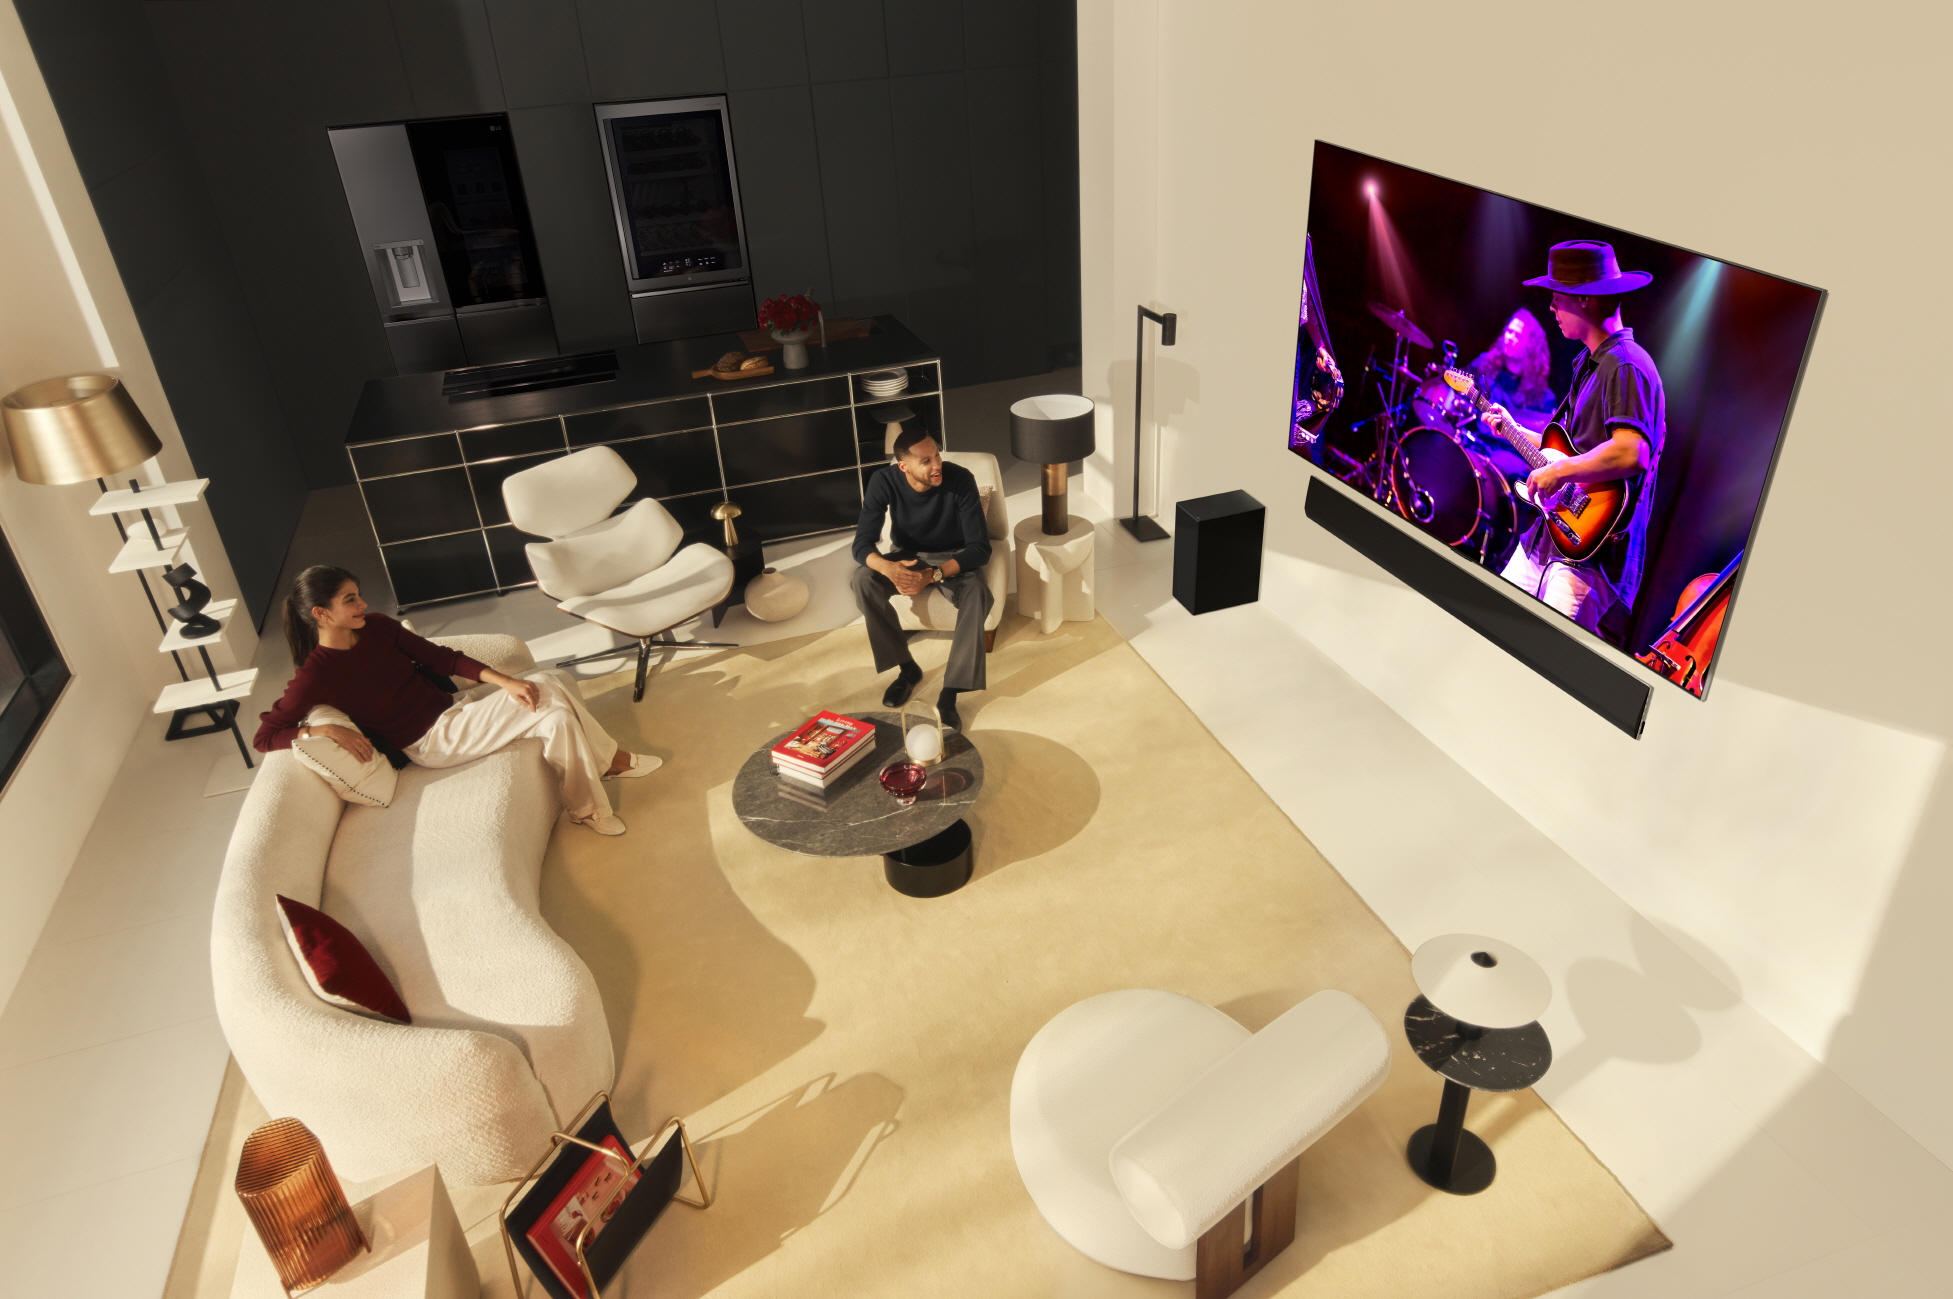 Foto de LG presenta los últimos televisores OLED evo a lavanguardia de la innovación y la evolución